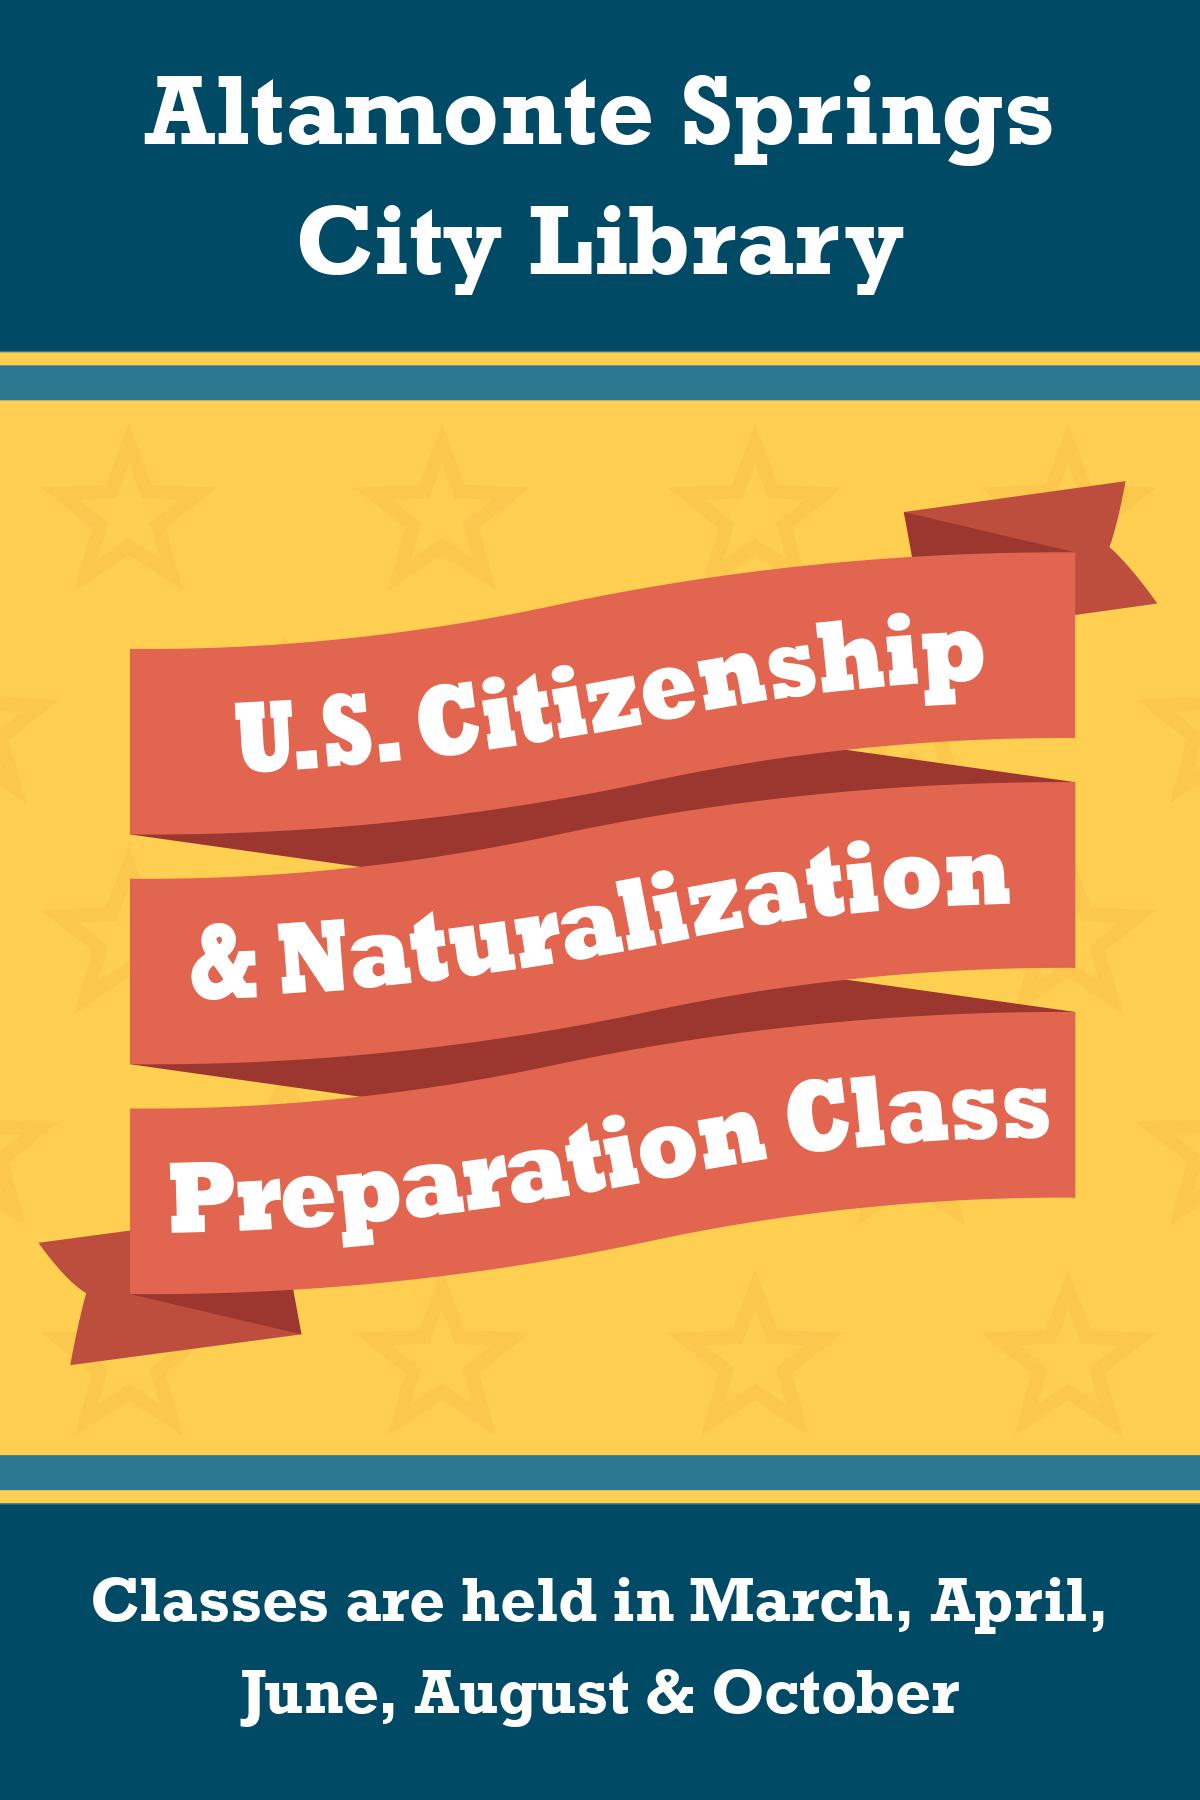 U.S. Citizenship & Naturalization Preparation Class